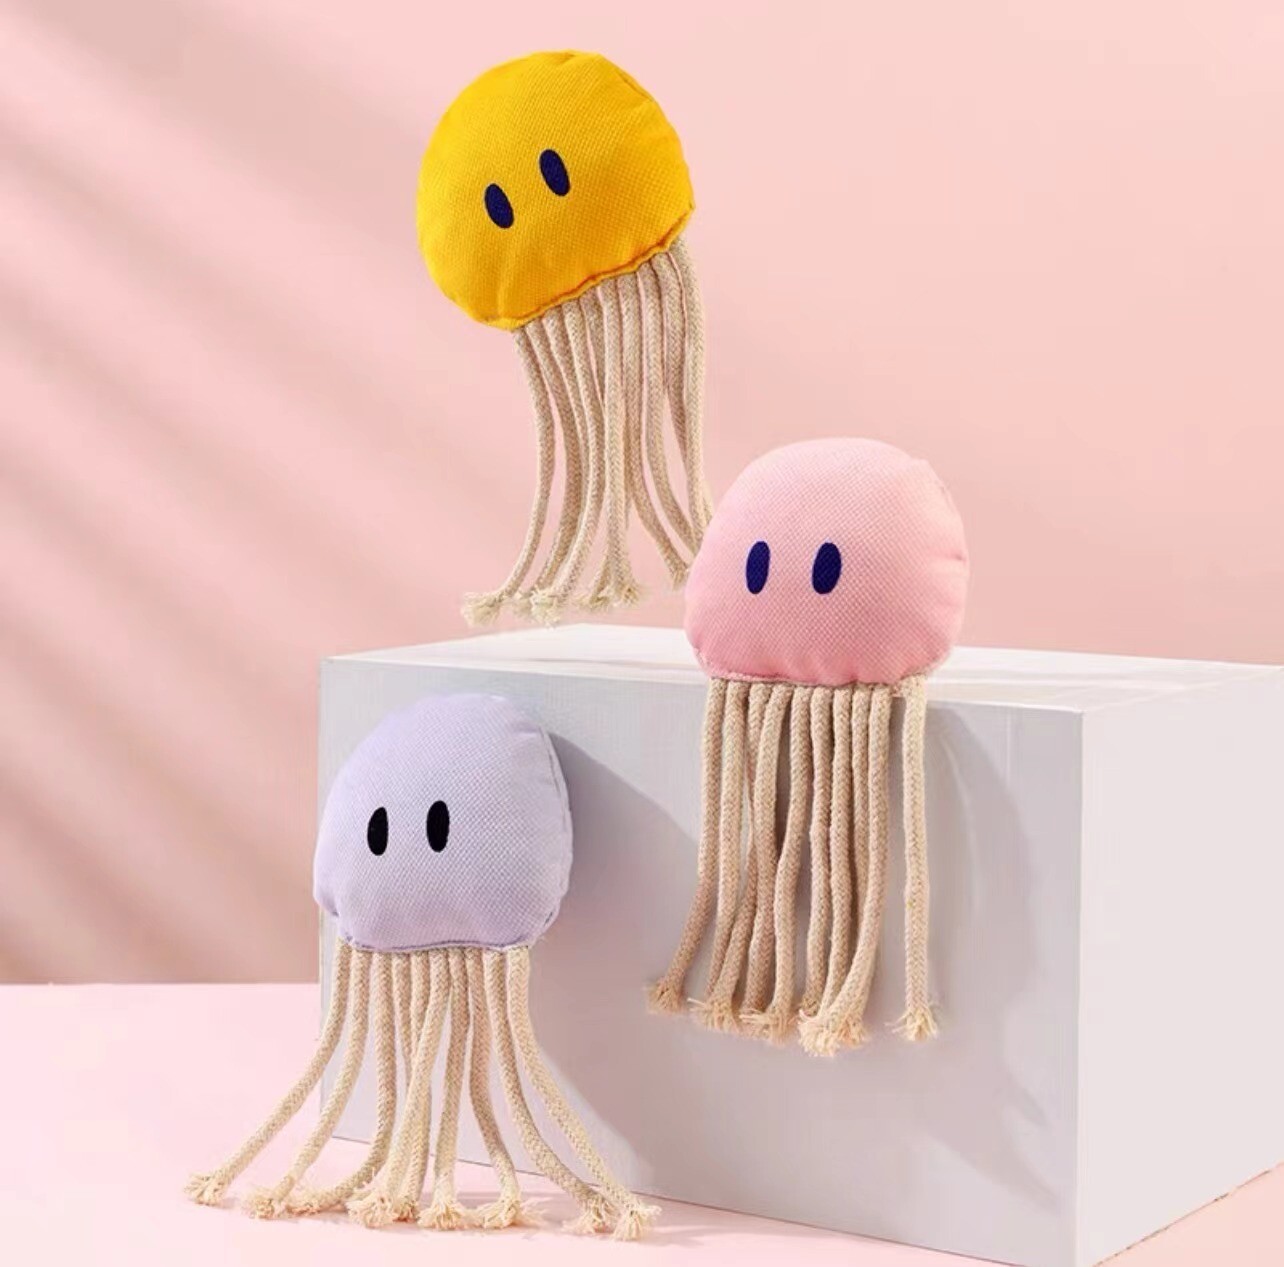 Miaoho Jellyfish catnip toy